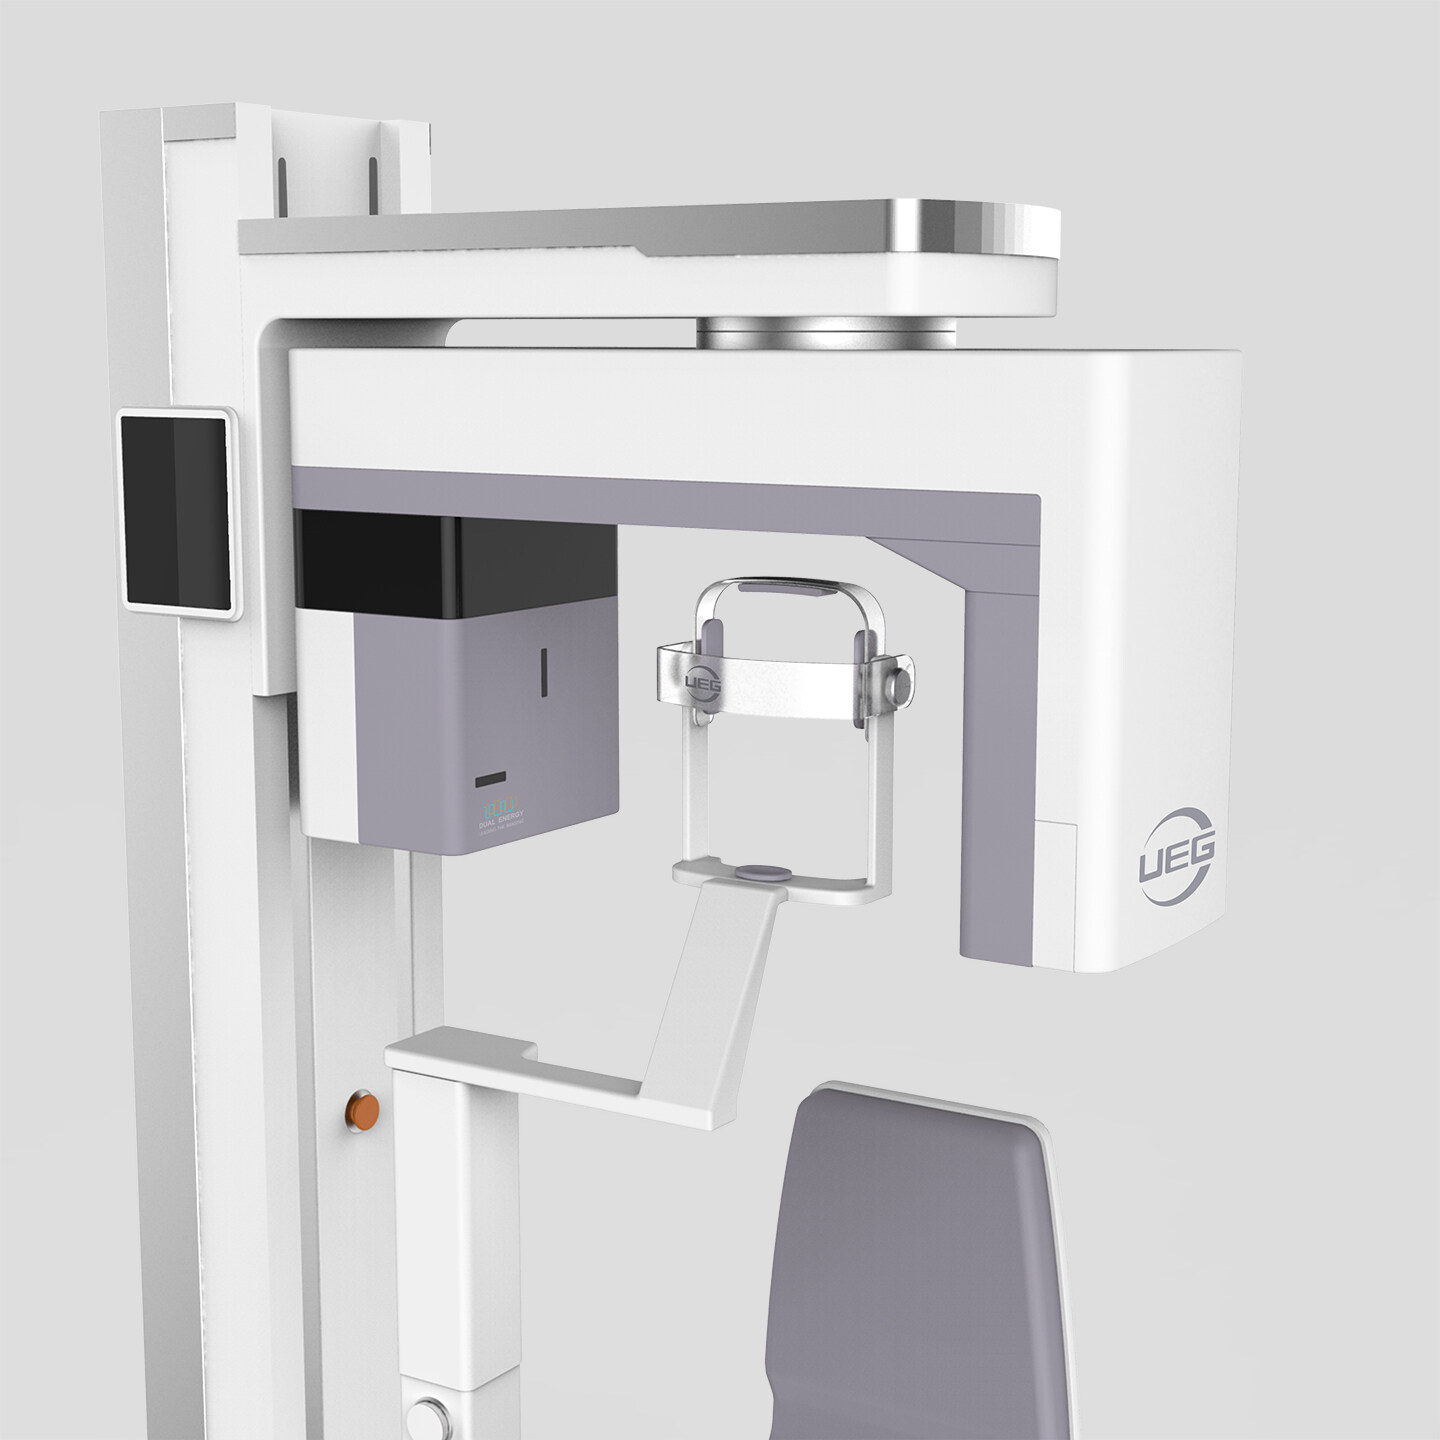 牙科CT设备设计-UEG牙科CT设备